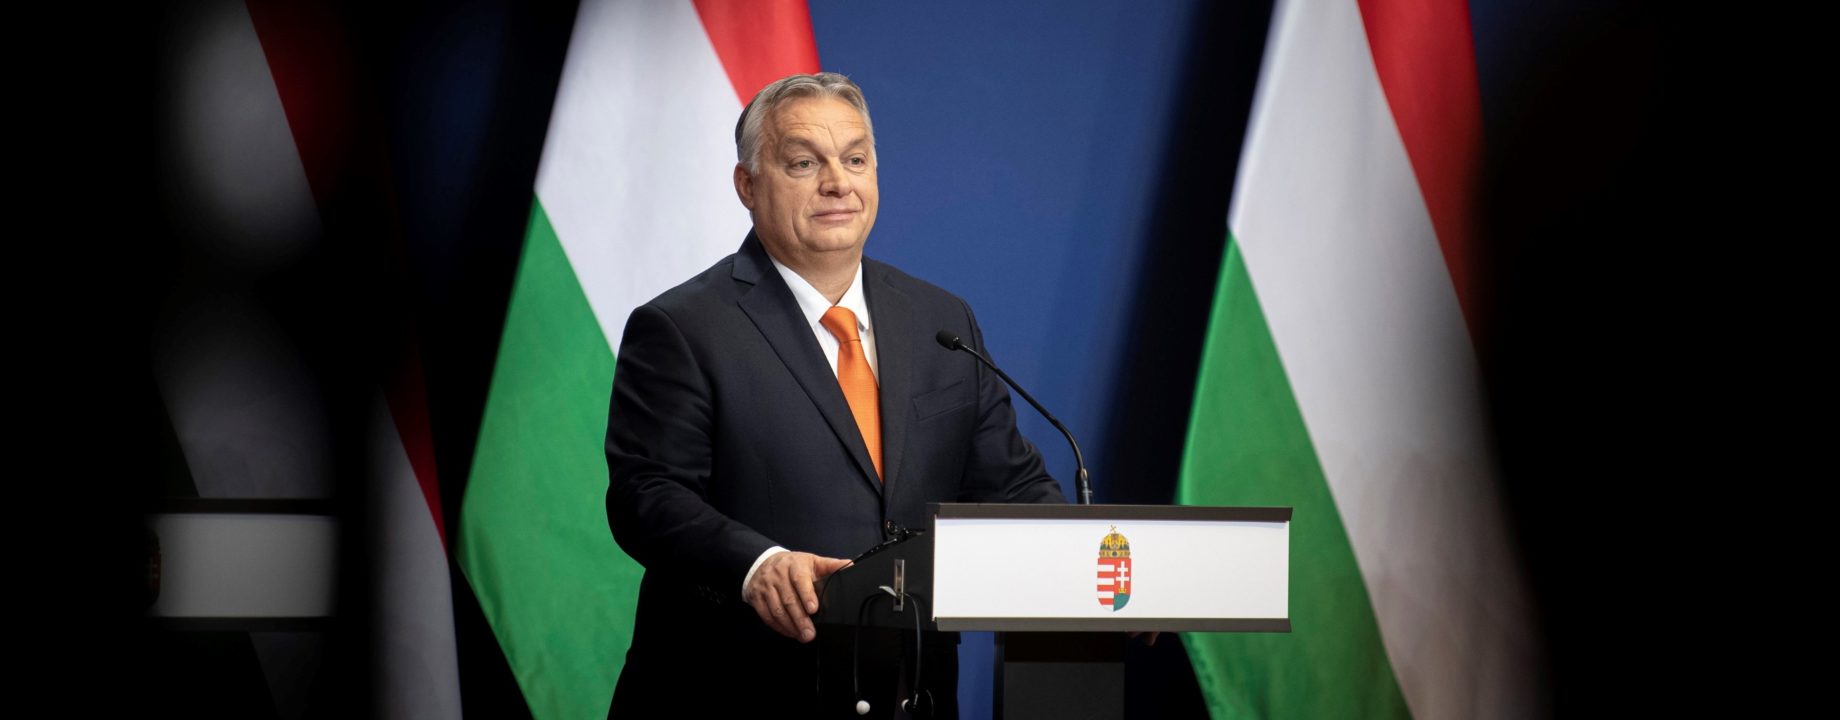 Orbán mti